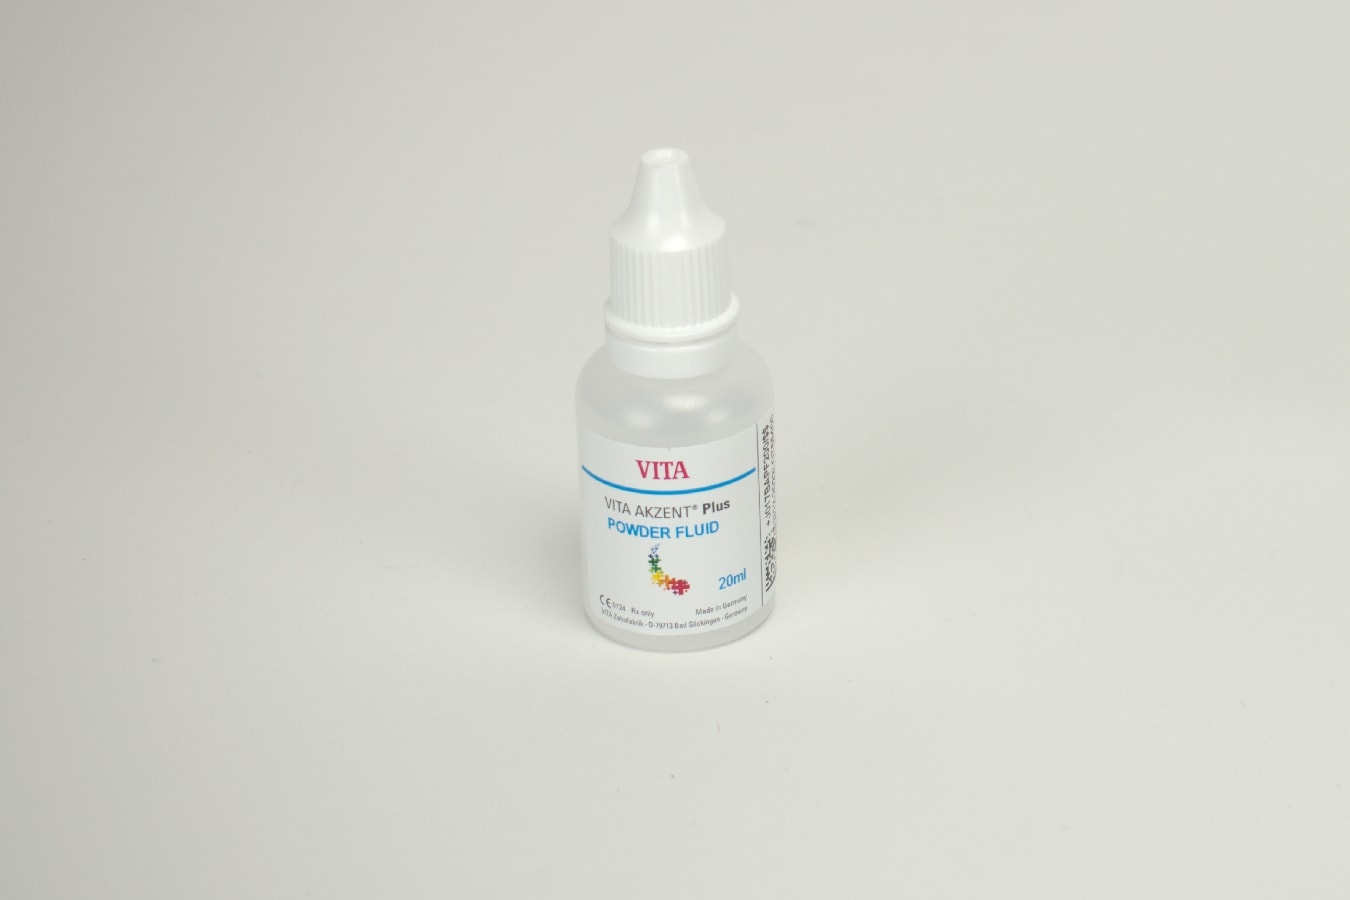 Vita Akzent Plus Powder Fluid 20ml